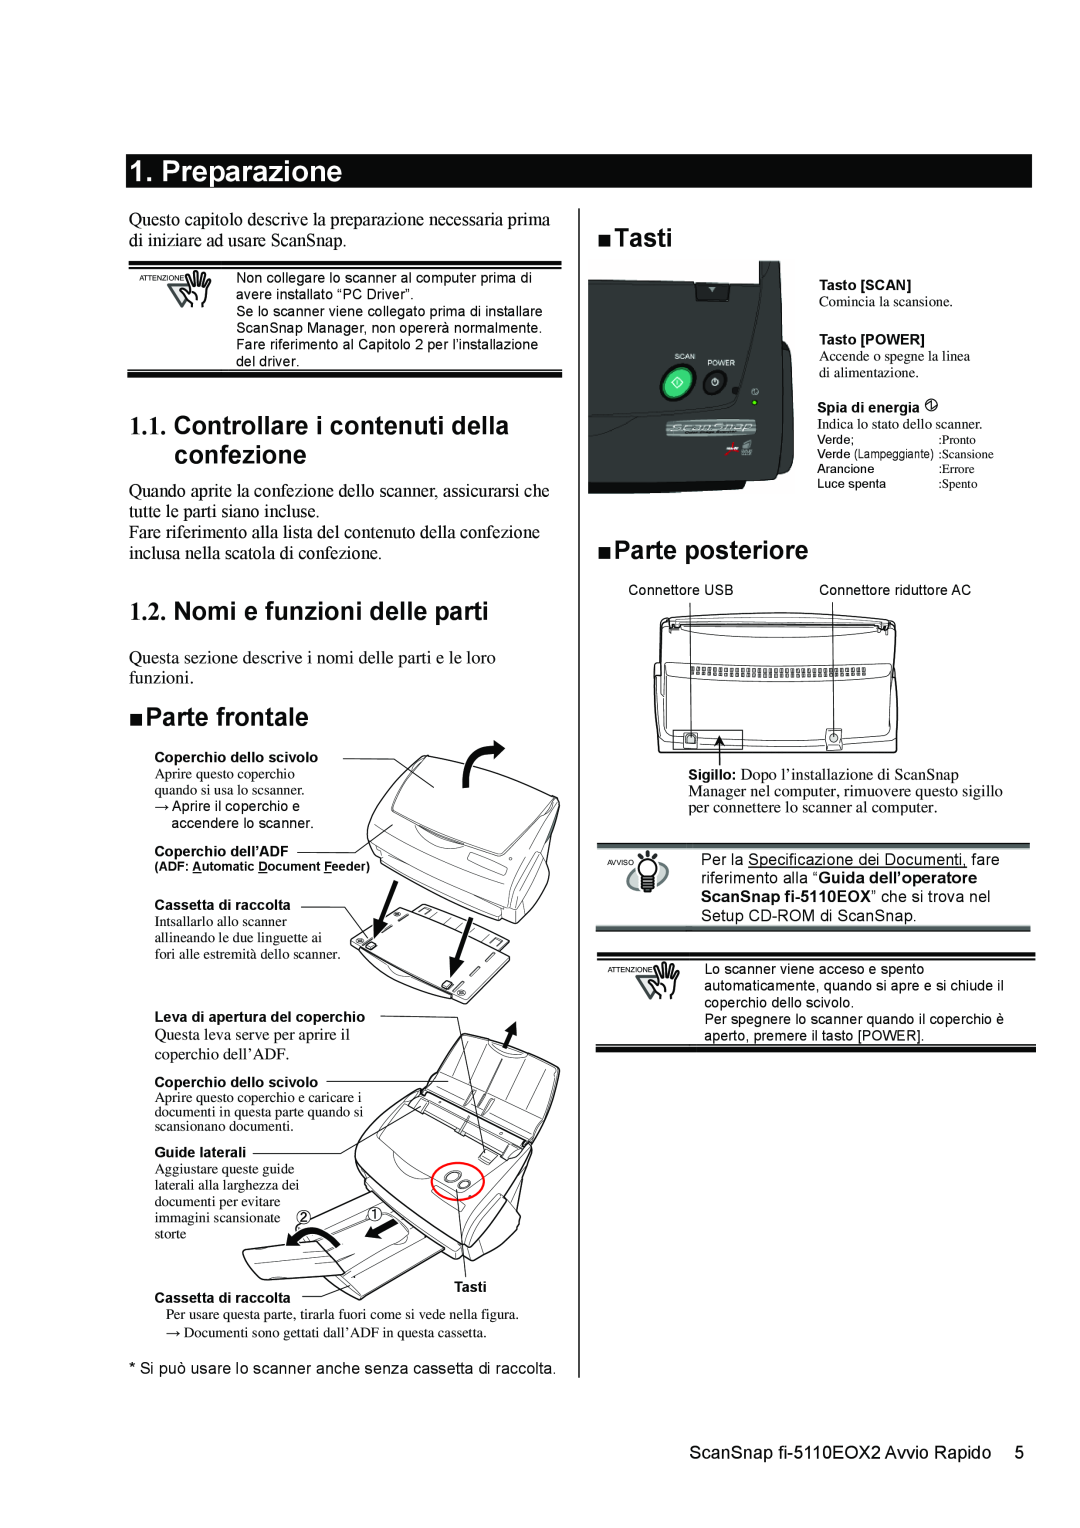 Fujitsu fi-5110EOX2 Preparazione, Controllare i contenuti della confezione, Nomi e funzioni delle parti, „ Parte frontale 